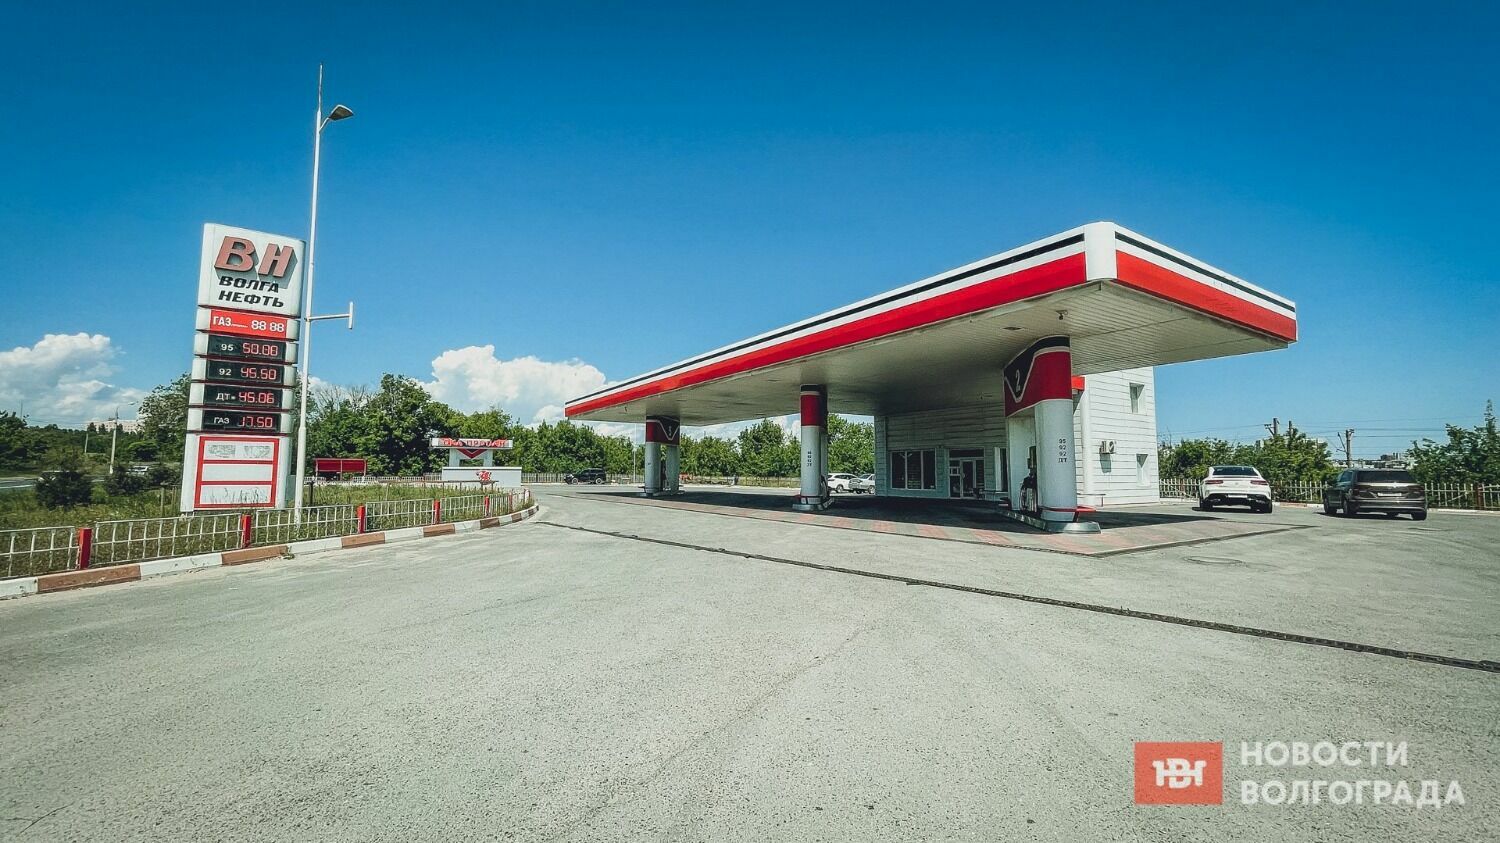 Пока бензин в Волгограде дорожает только у однок компании, а дизельное топливо у всех